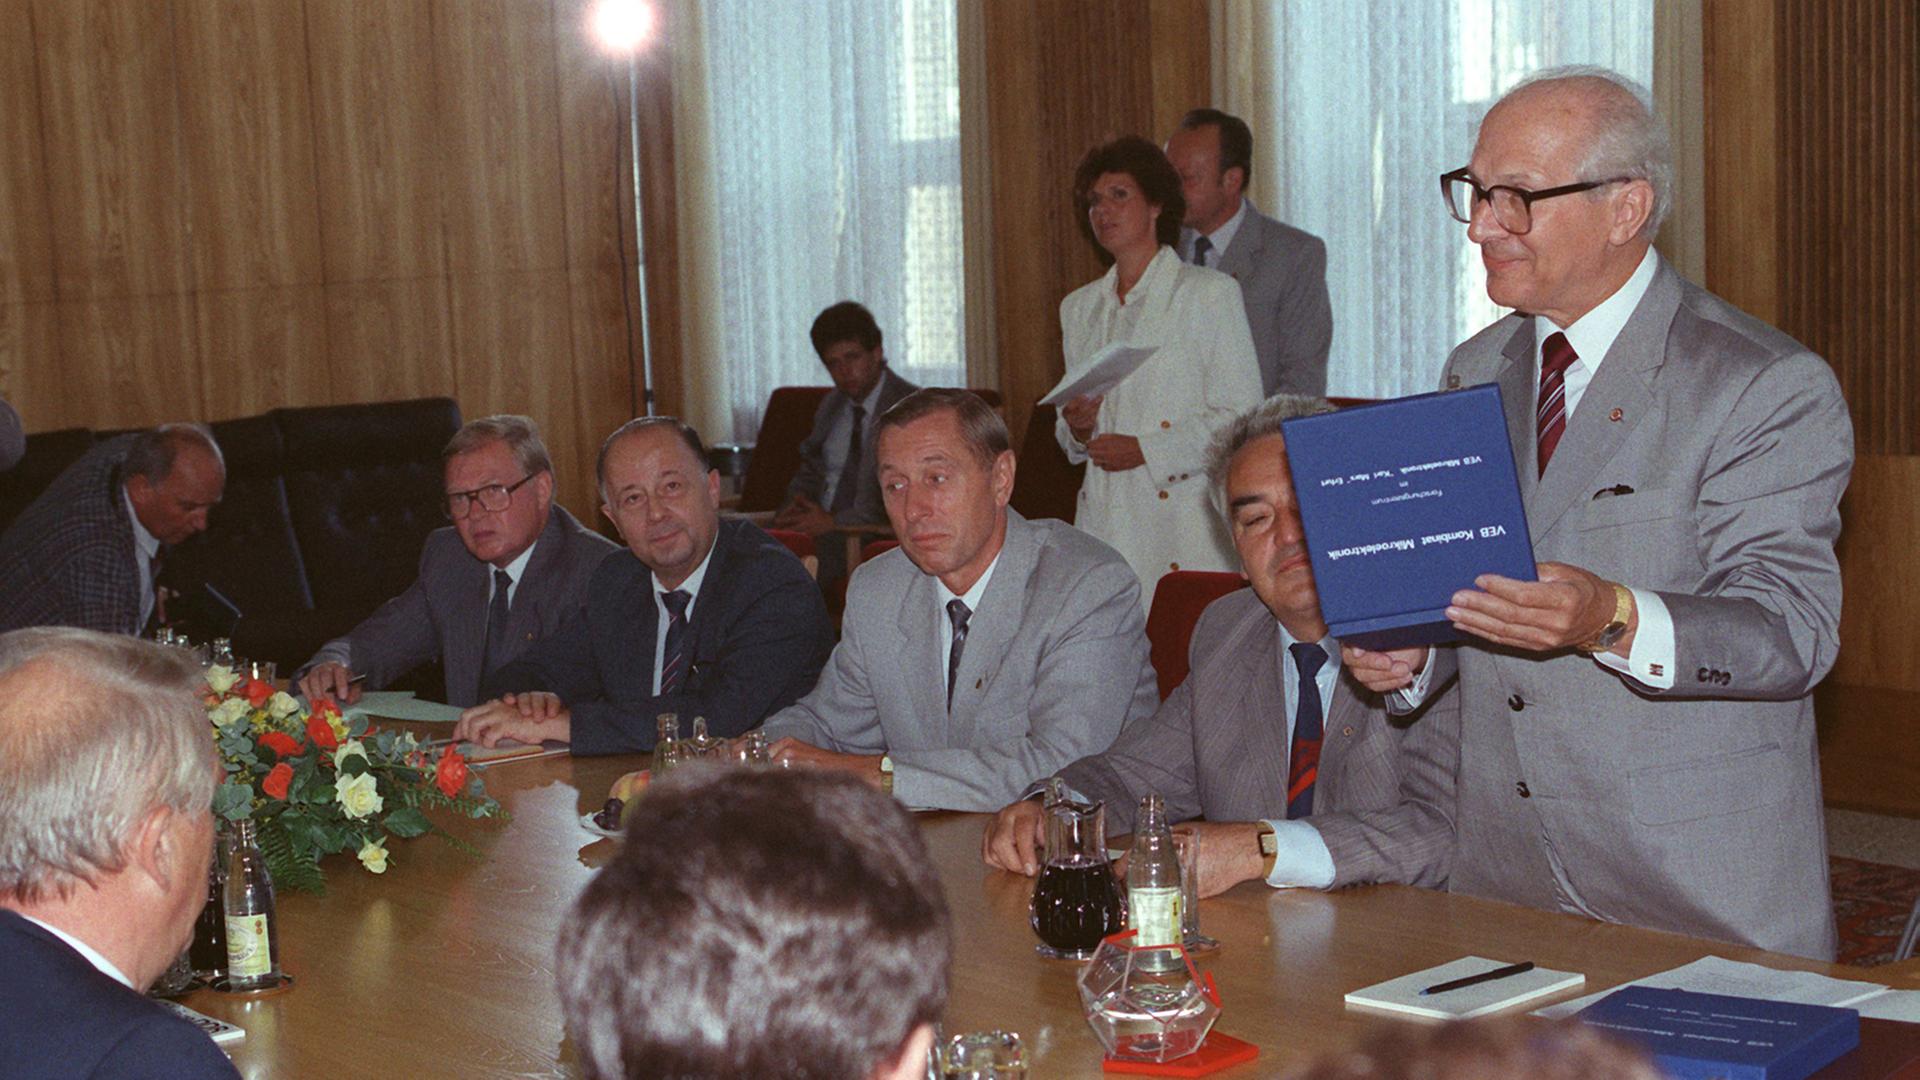 DDR-Mikroelektroniker übergaben den ersten in eigener Produktion gefertigten 32-bit-Mikroprozessor an Erich Honecker